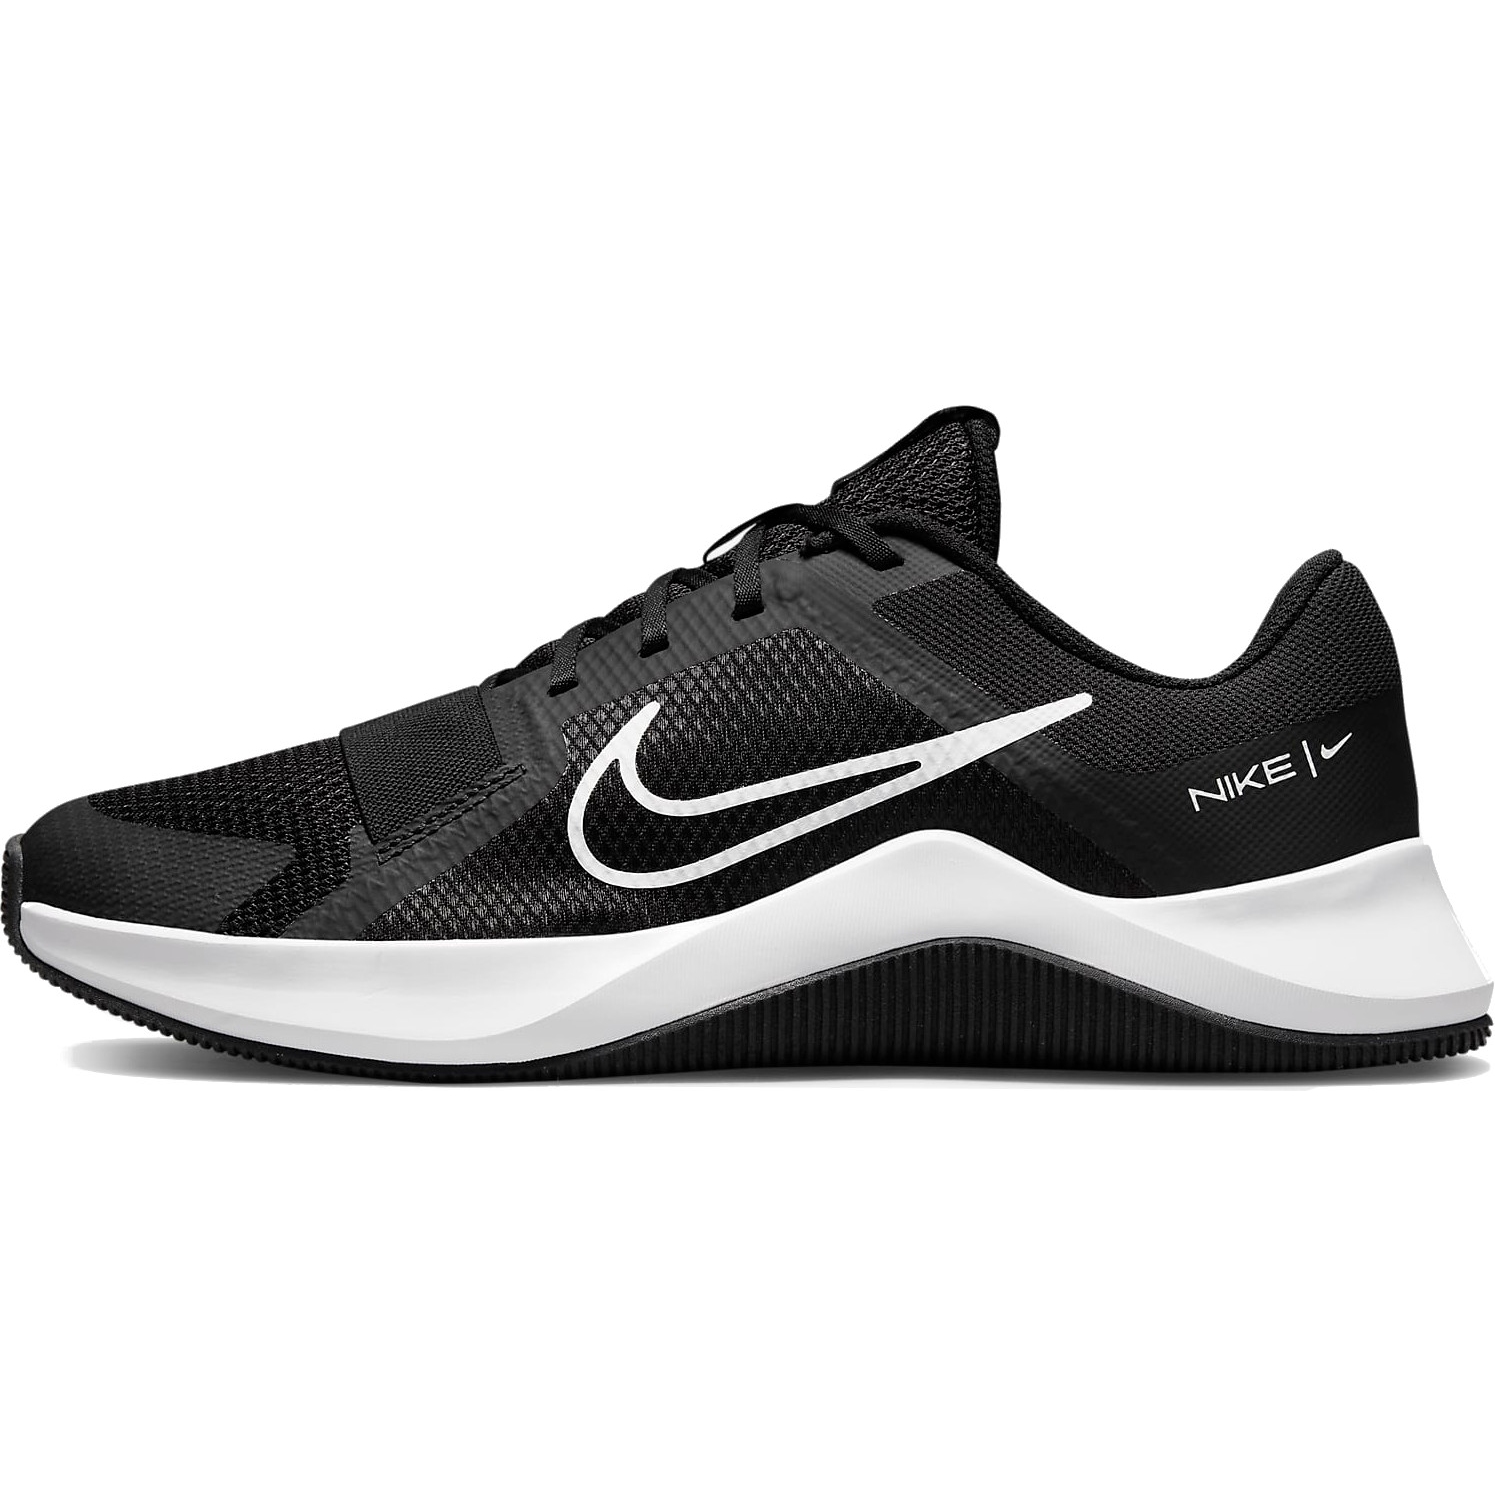 Immagine prodotto da Nike Scarpe Uomo - MC Trainer 2 - nero/bianco-nero DM0823-003